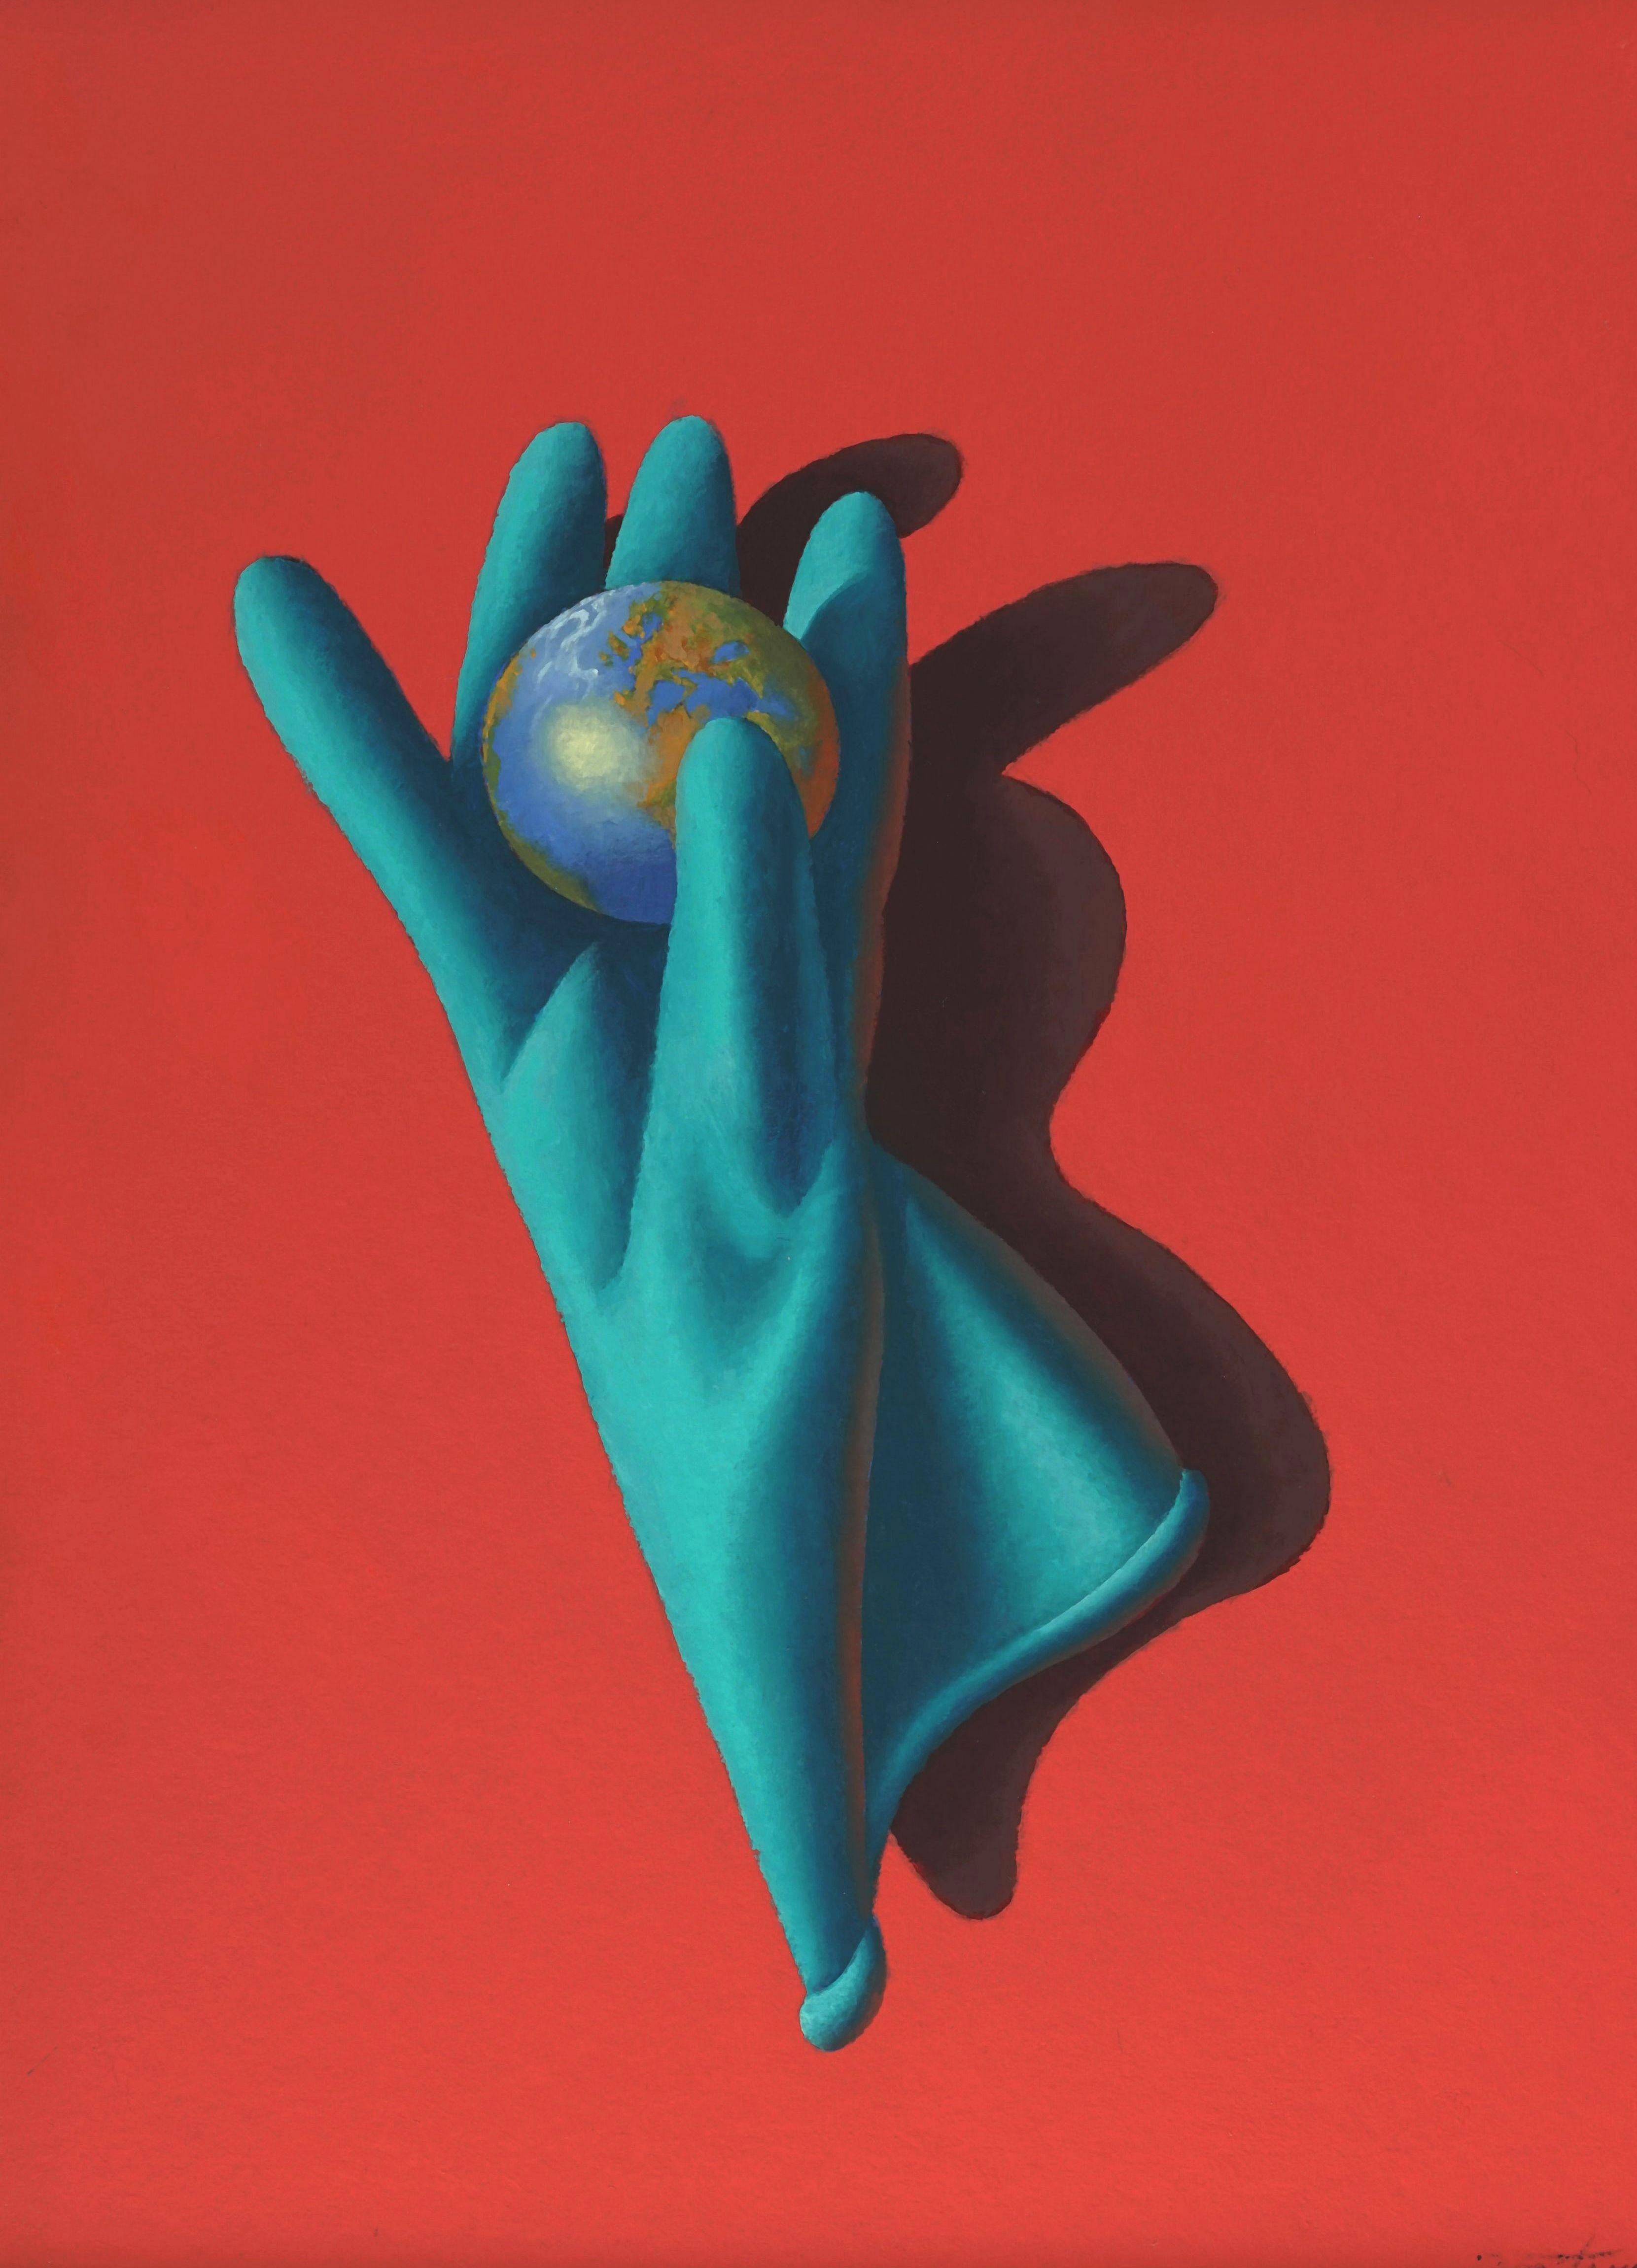 Gentle Hände, die Welt beherrschen. 2020. Segeltuch, Karton, Öl, 60x42 cm – Painting von Juris Dimiters